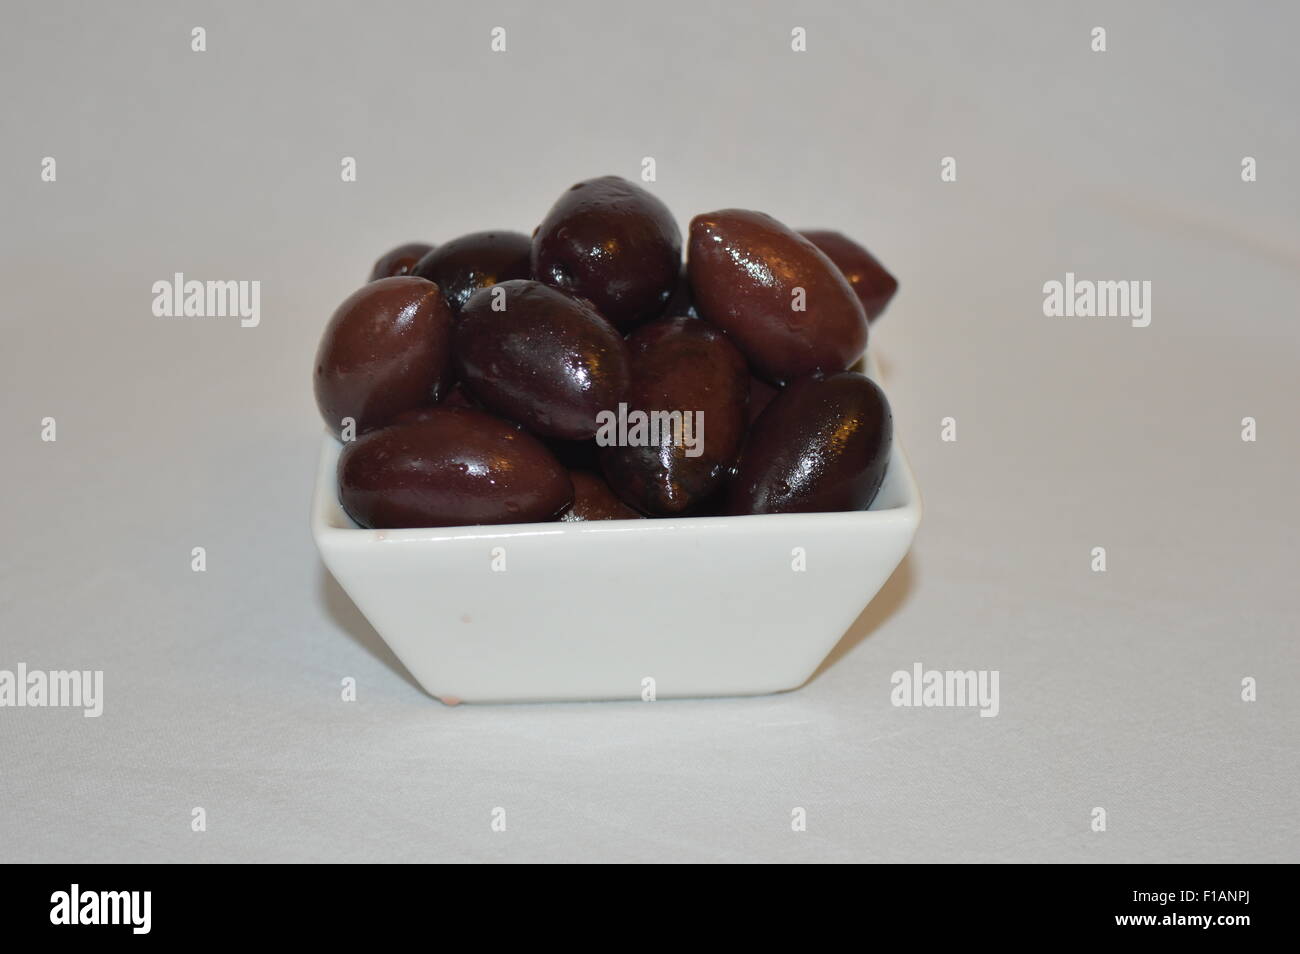 whole kalamata olives Stock Photo